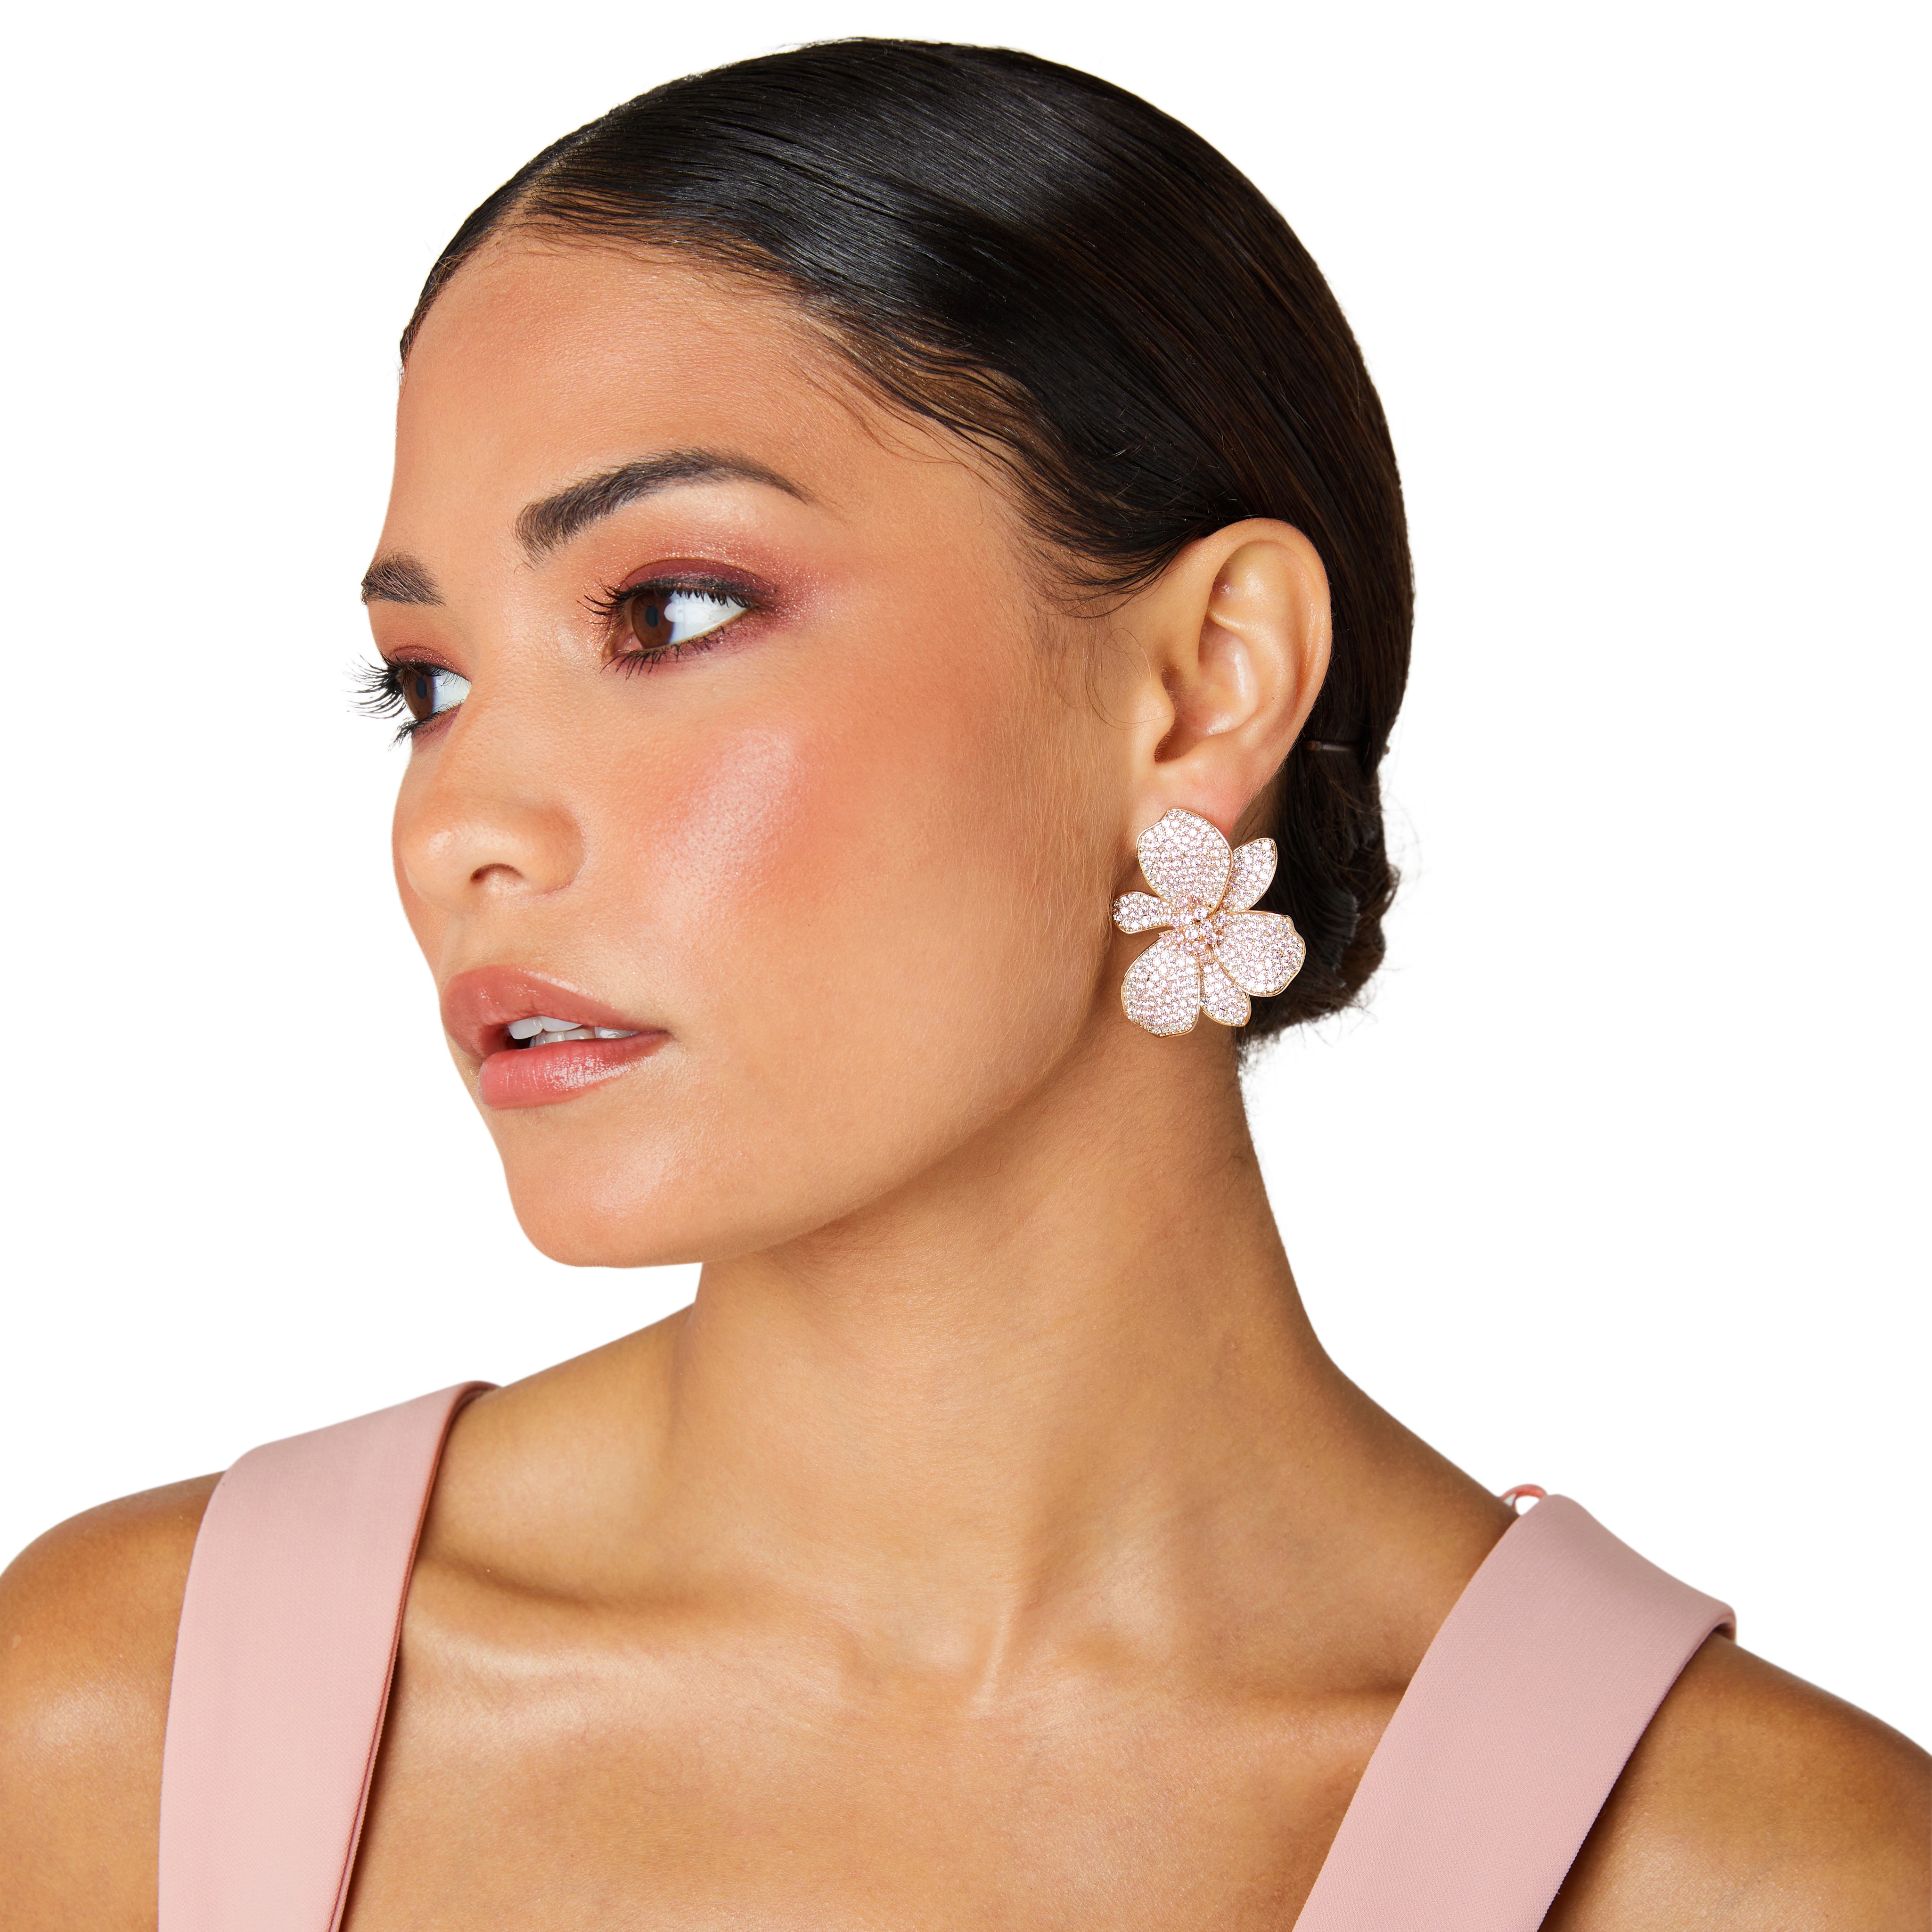 Flower earrings, cocktail earrings, pink earrings, rose gold earrings, earrings for women, engagement earrings, wedding earrings, statement earrings, cluster earrings, bridal earrings